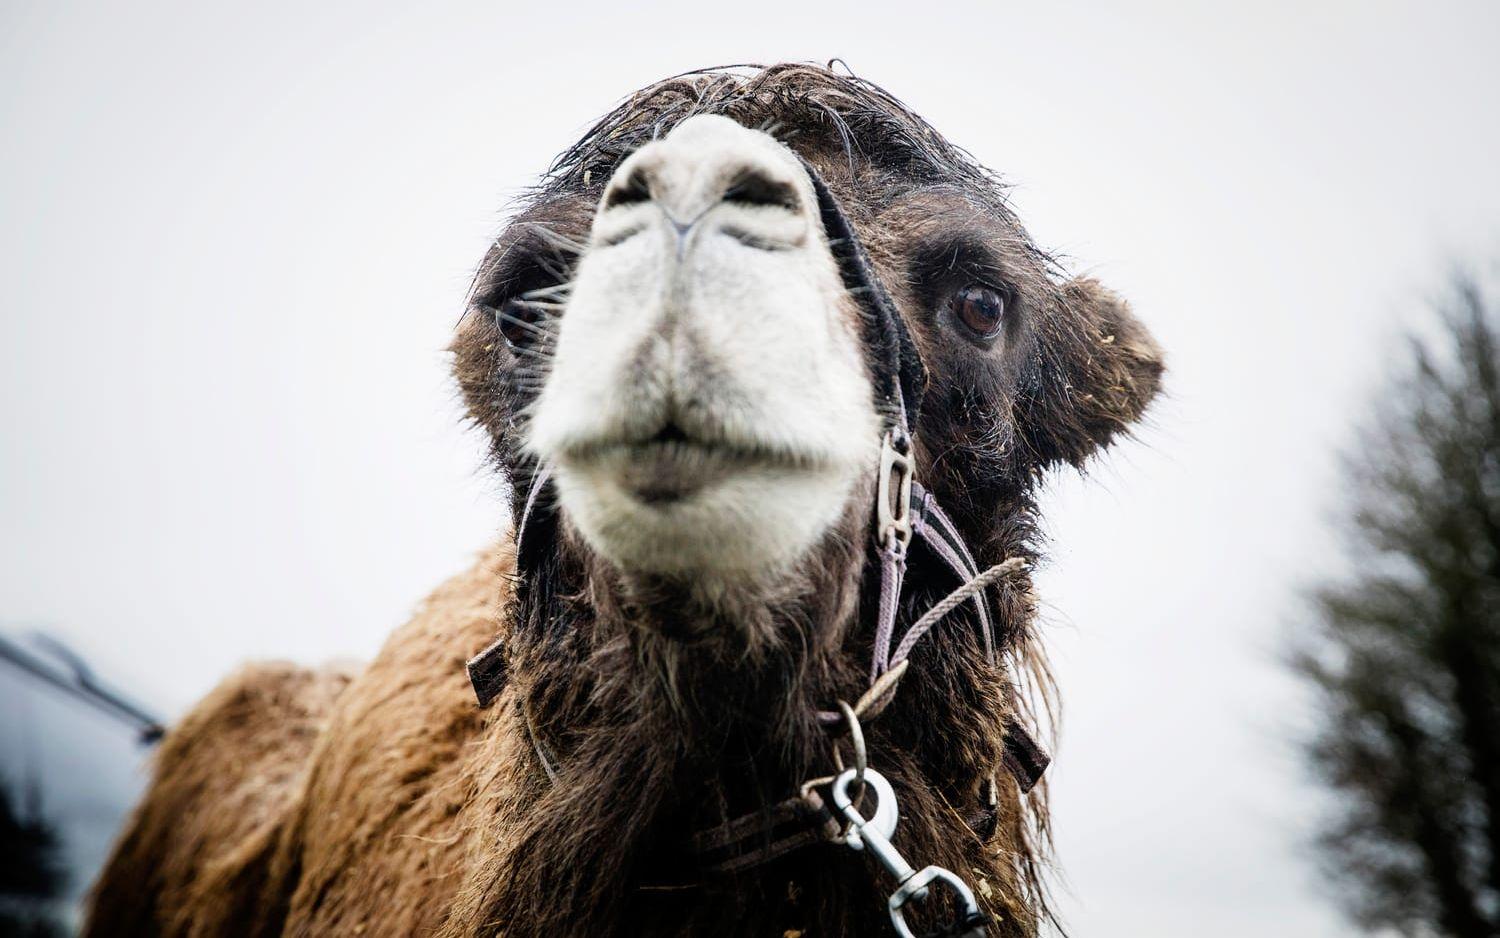  Djuren intresserade många av de allra yngsta i publiken. Den sibiriska kamelen Pascha har en viktig roll i föreställningen Levande julkrubba.